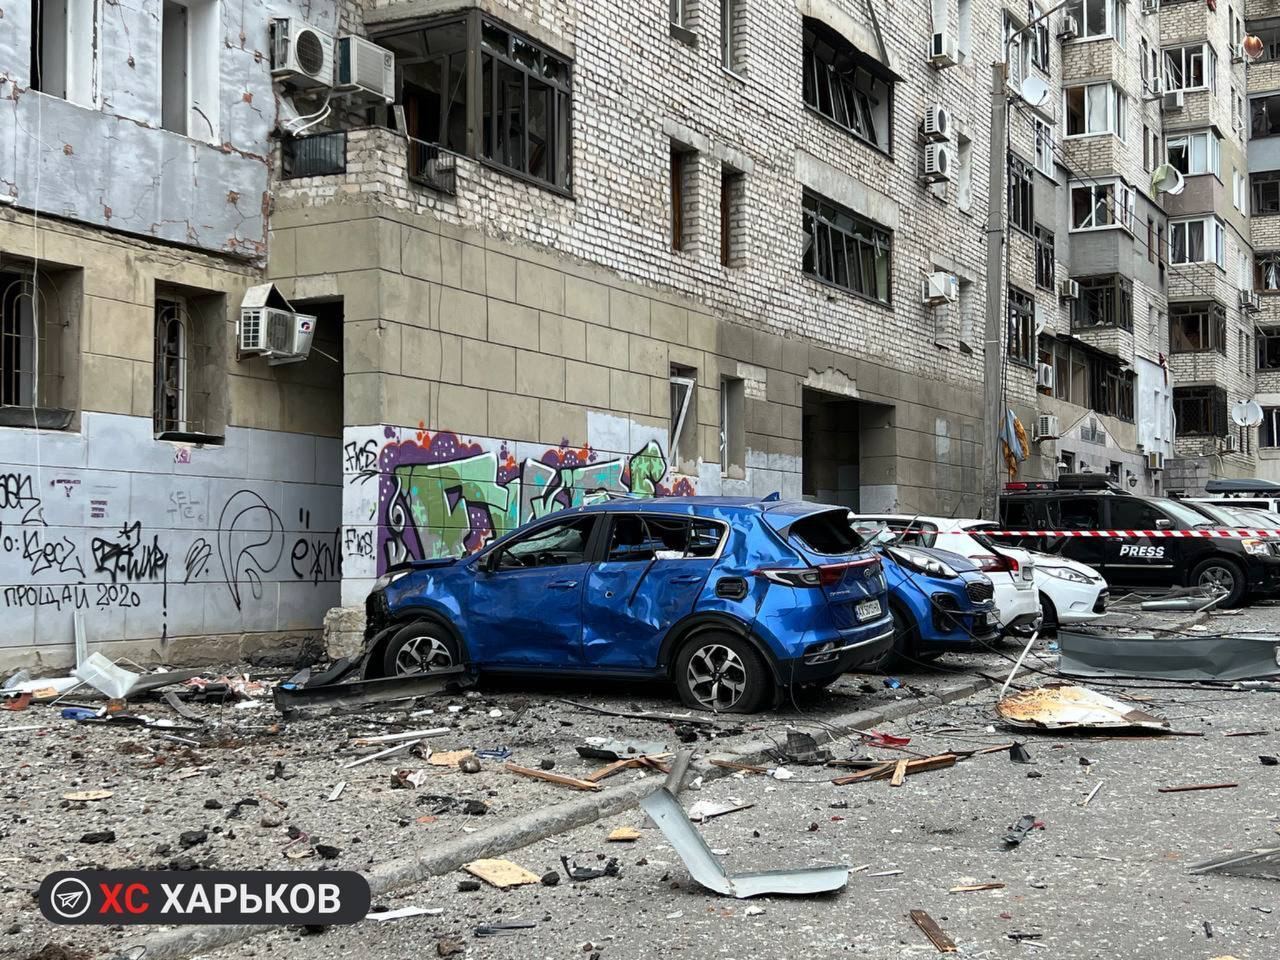 Zdjęcia i wideo po ostrzale budynków w centrum Charkowa